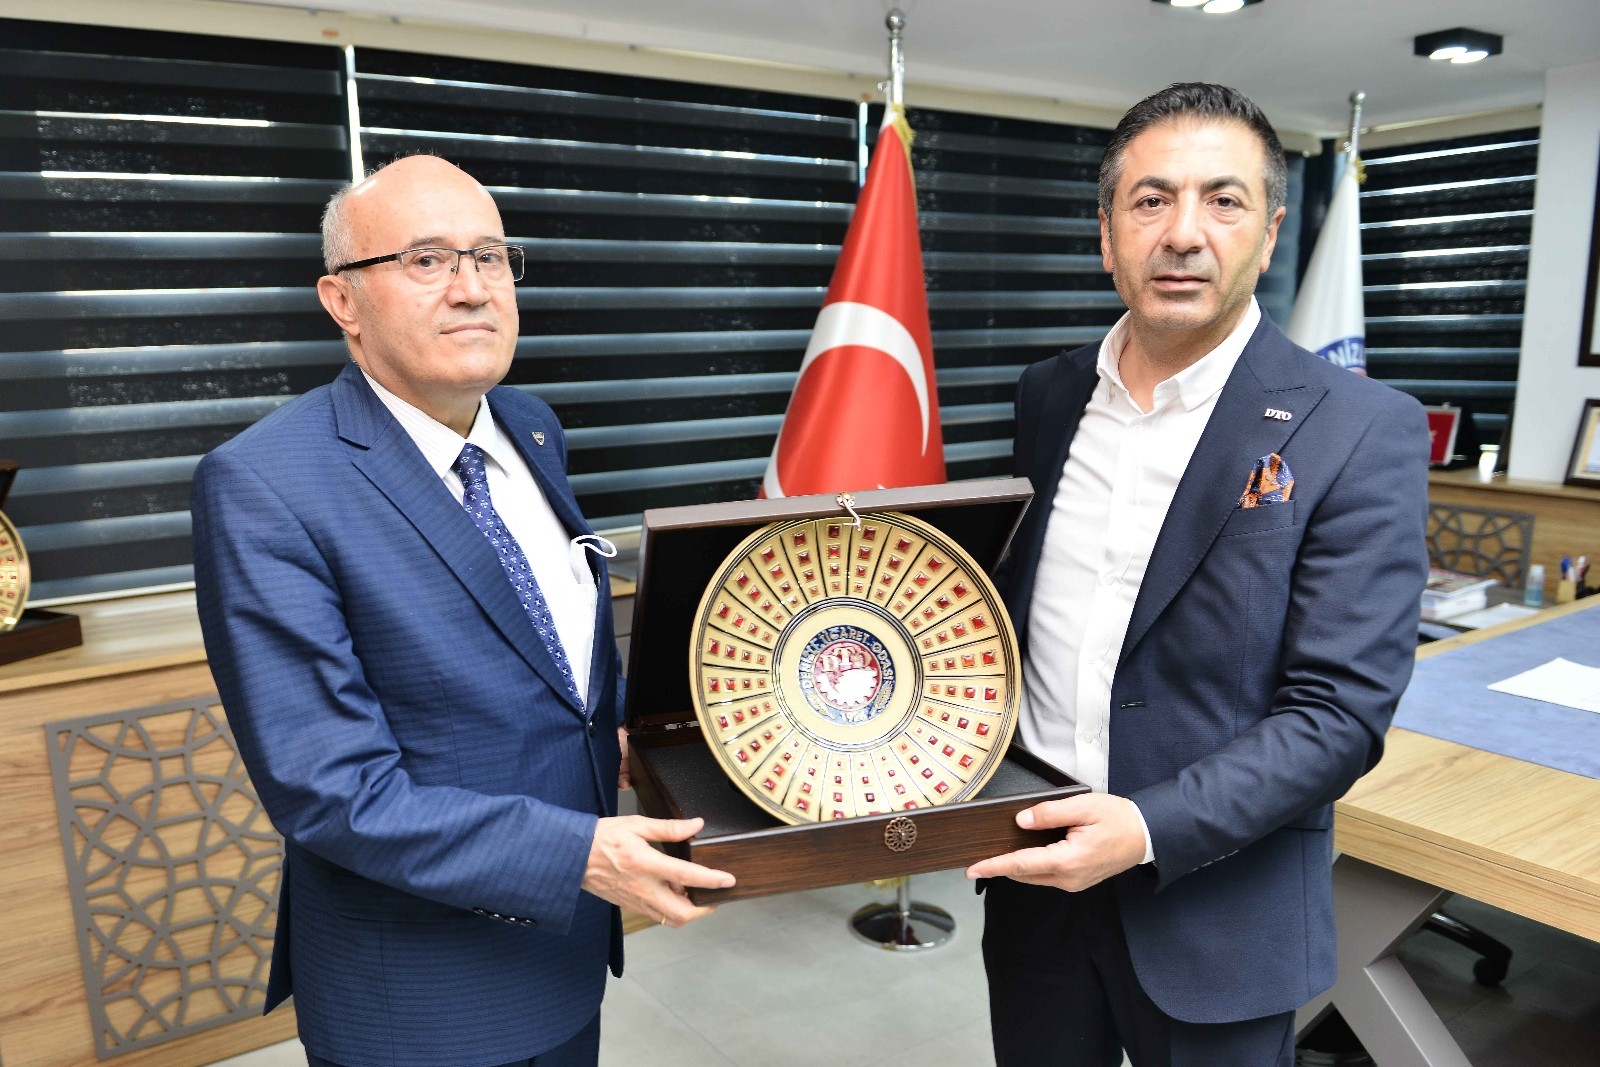 Kaymakam Balcıoğlu’ndan DTO Başkanı Erdoğan’a veda ziyareti